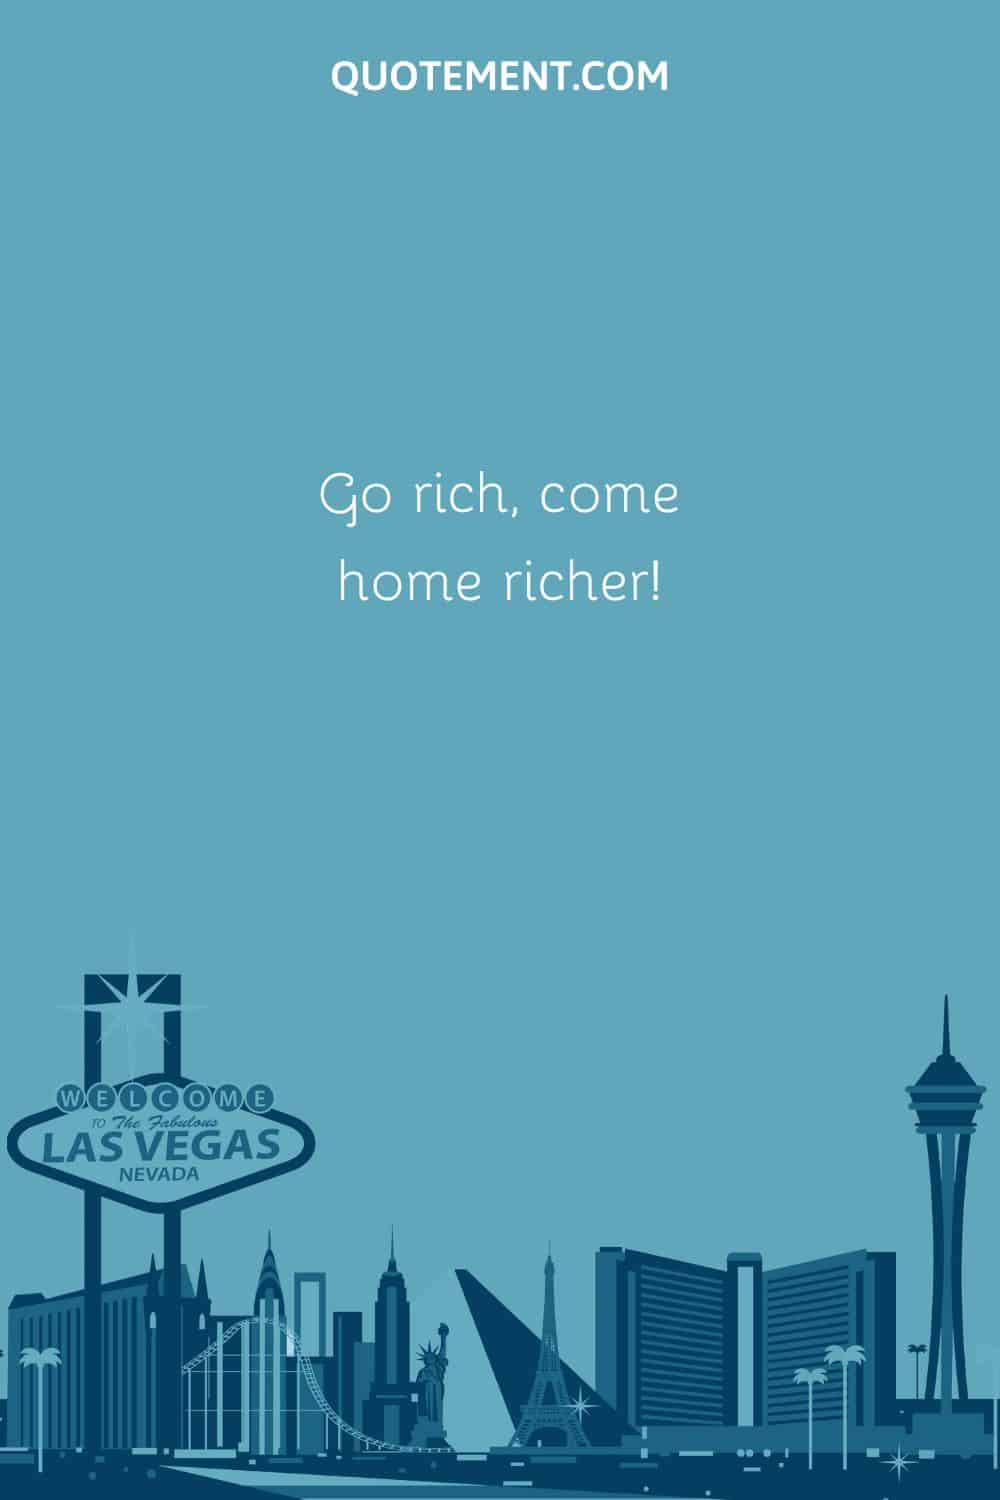 Go rich, come home richer!